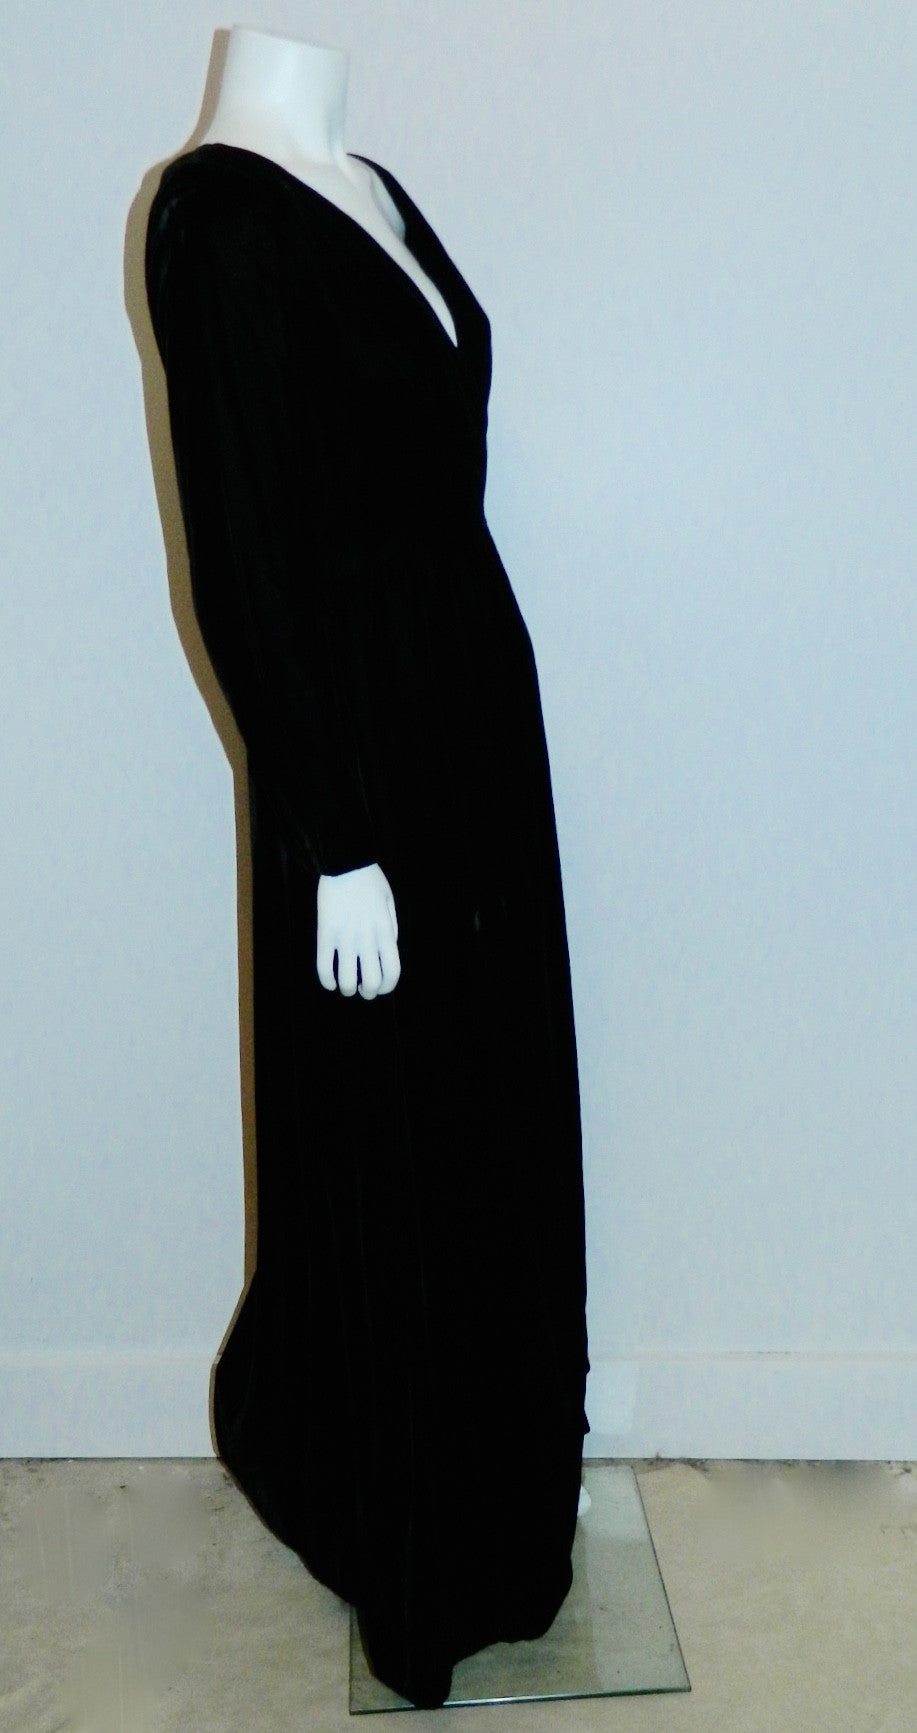 vintage 1960s black evening gown MOLLIE PARNIS dress / rayon velvet wrap front XS